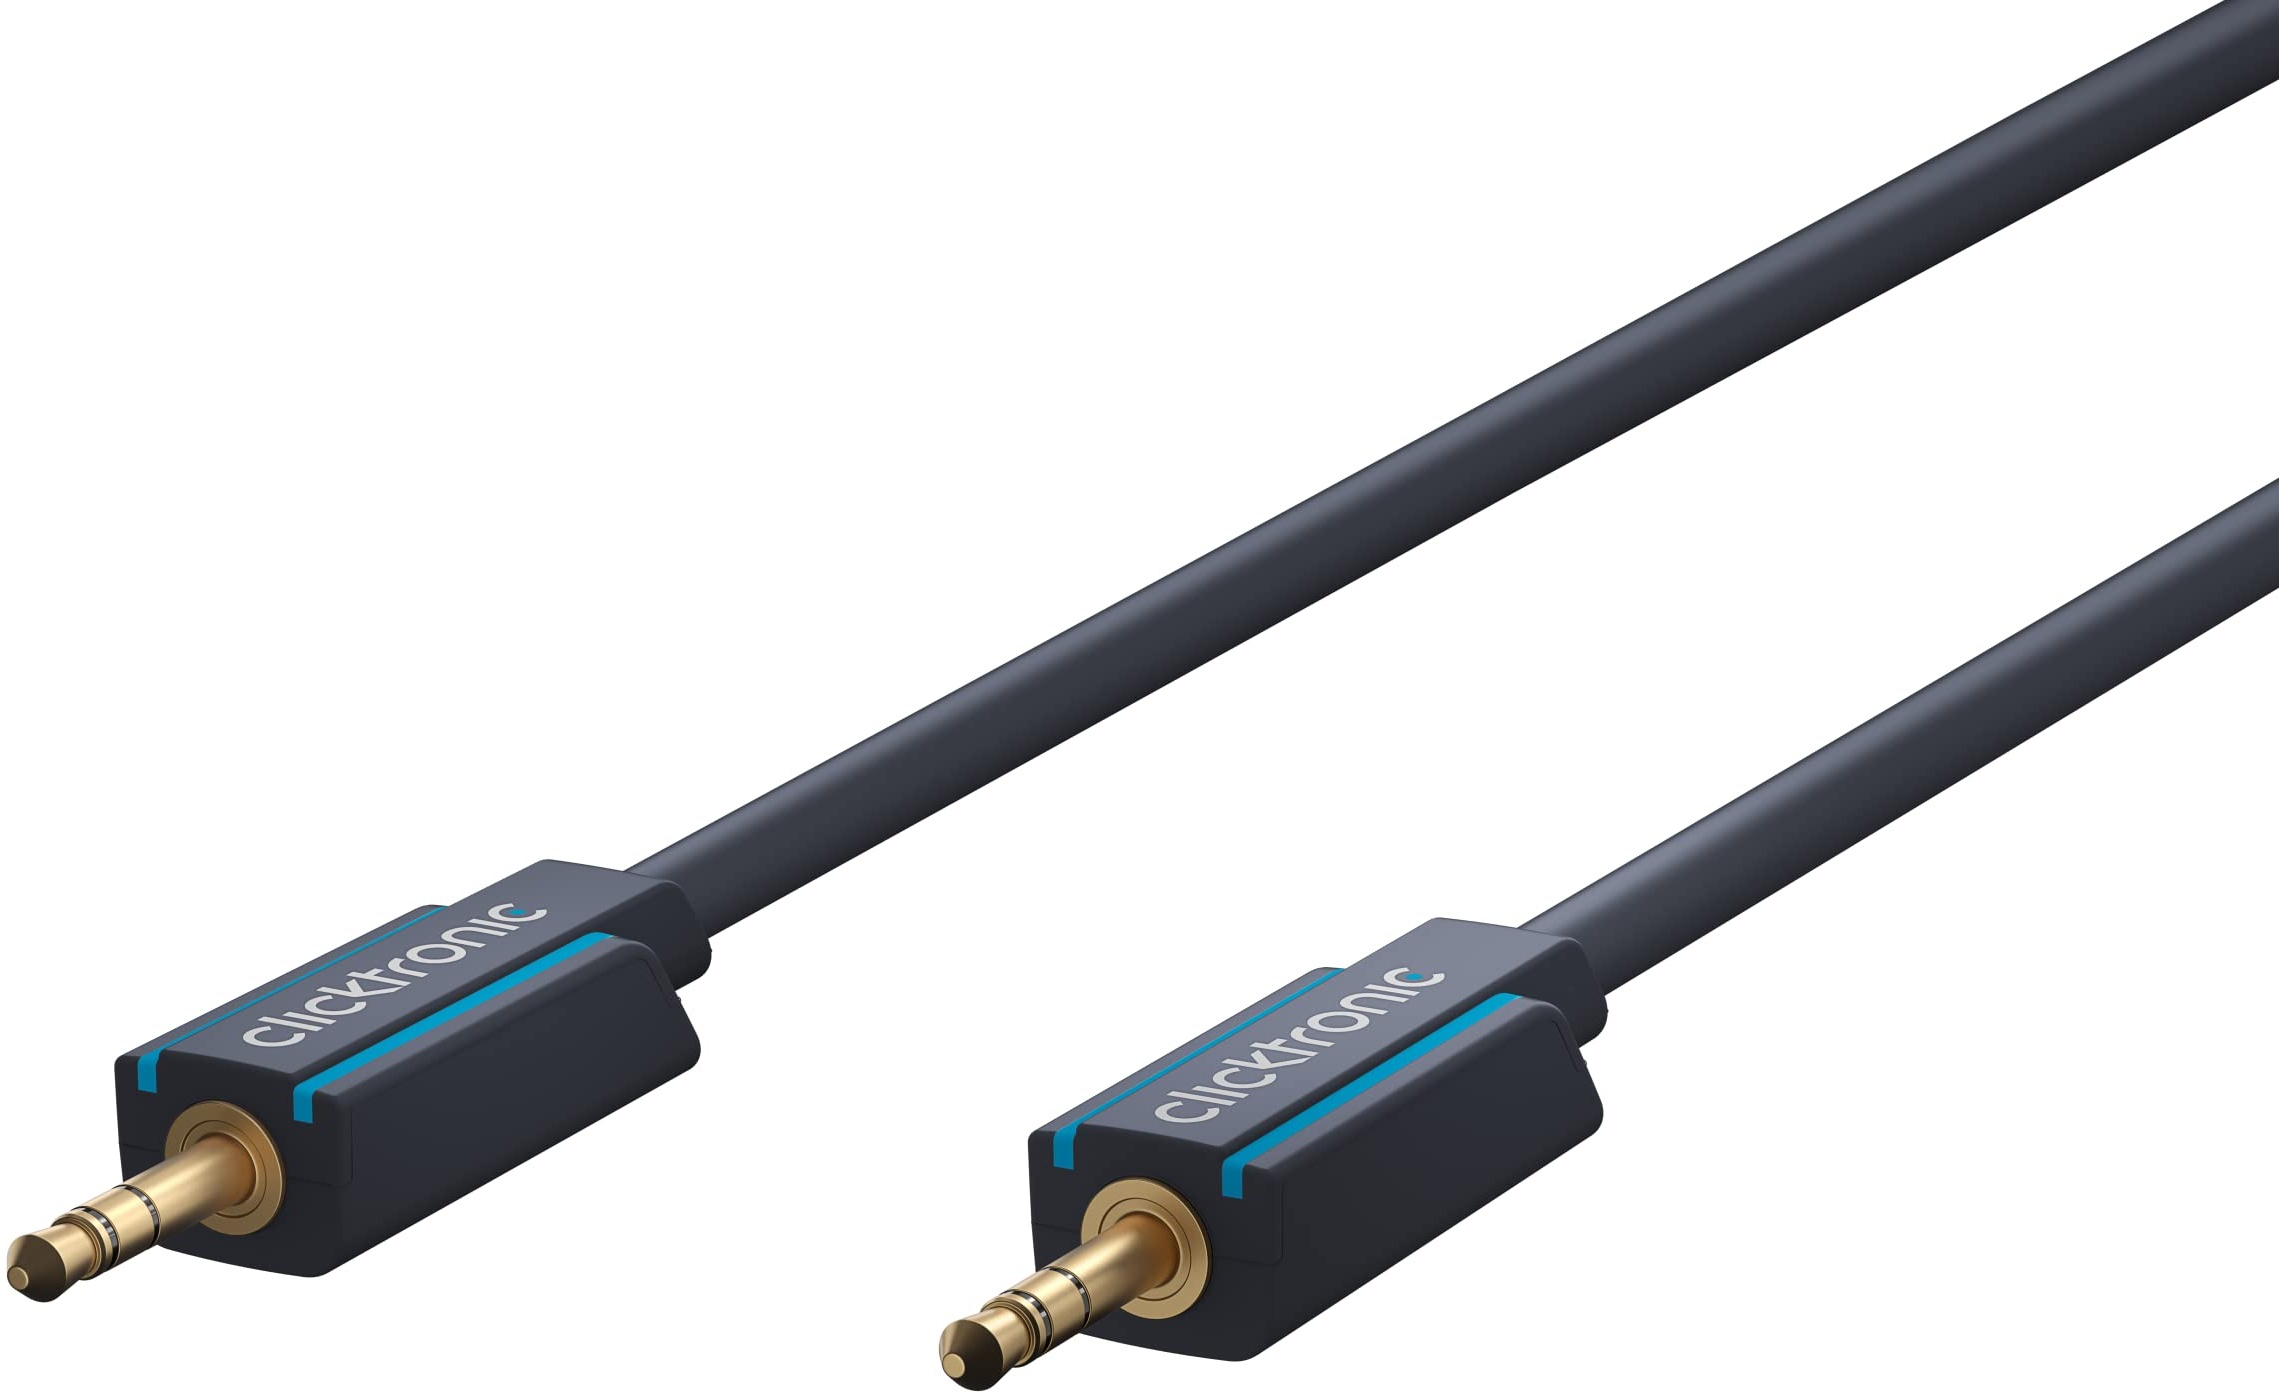 Clicktronic Aux Kabel 3.5mm Audio Kabel mit Kupferleiter, Klinkenkabel für Kopfhörer, Apple iPhone iPod iPad, Stereoanlagen, Smartphones und MP3 Player 1m